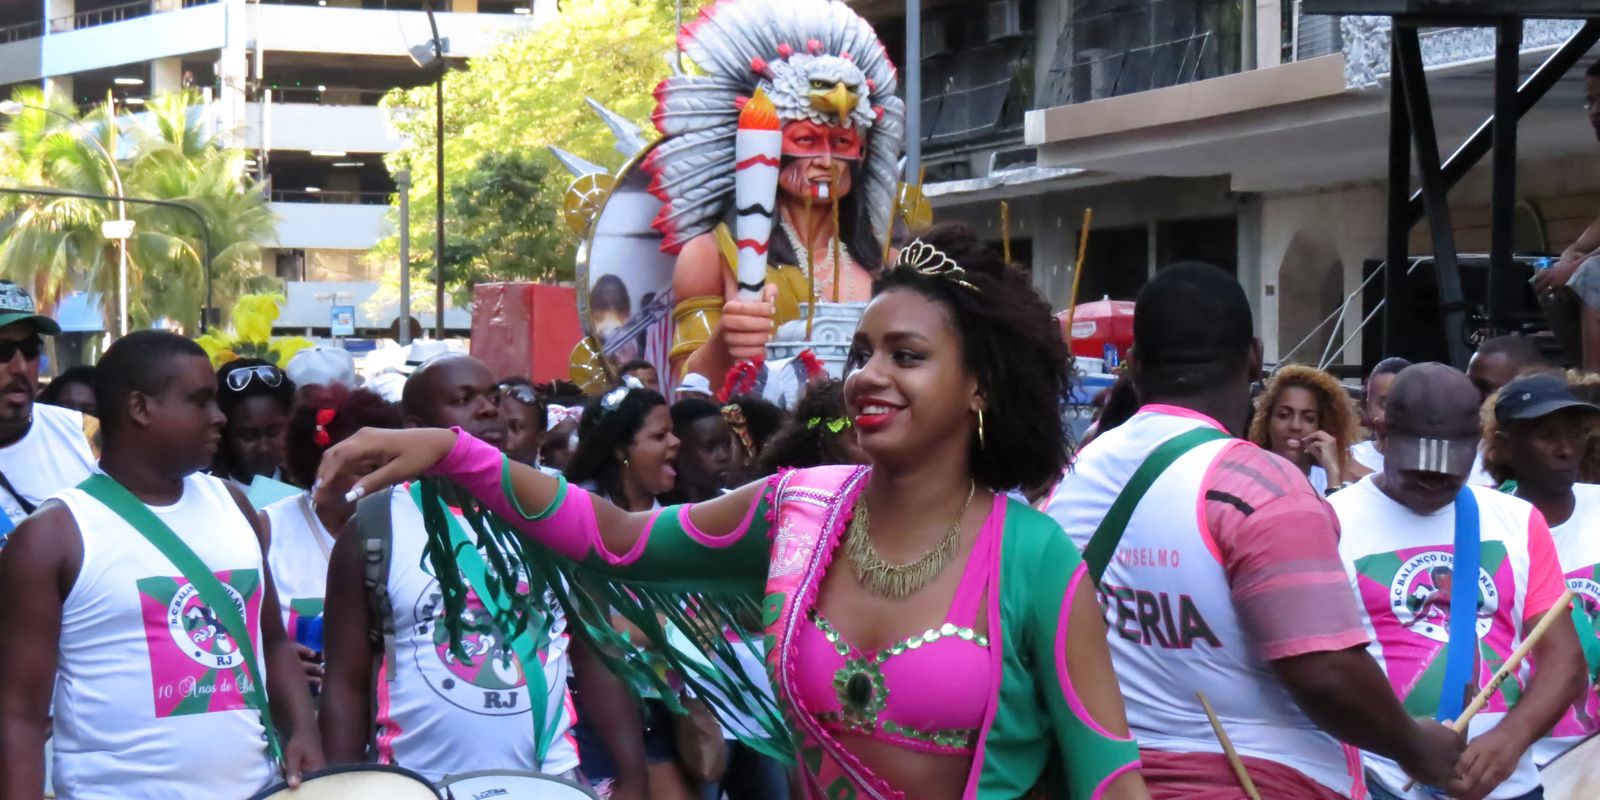 cacique-de-ramos-faz-63-anos-e-fortalece historia-no-carnaval-do-rio